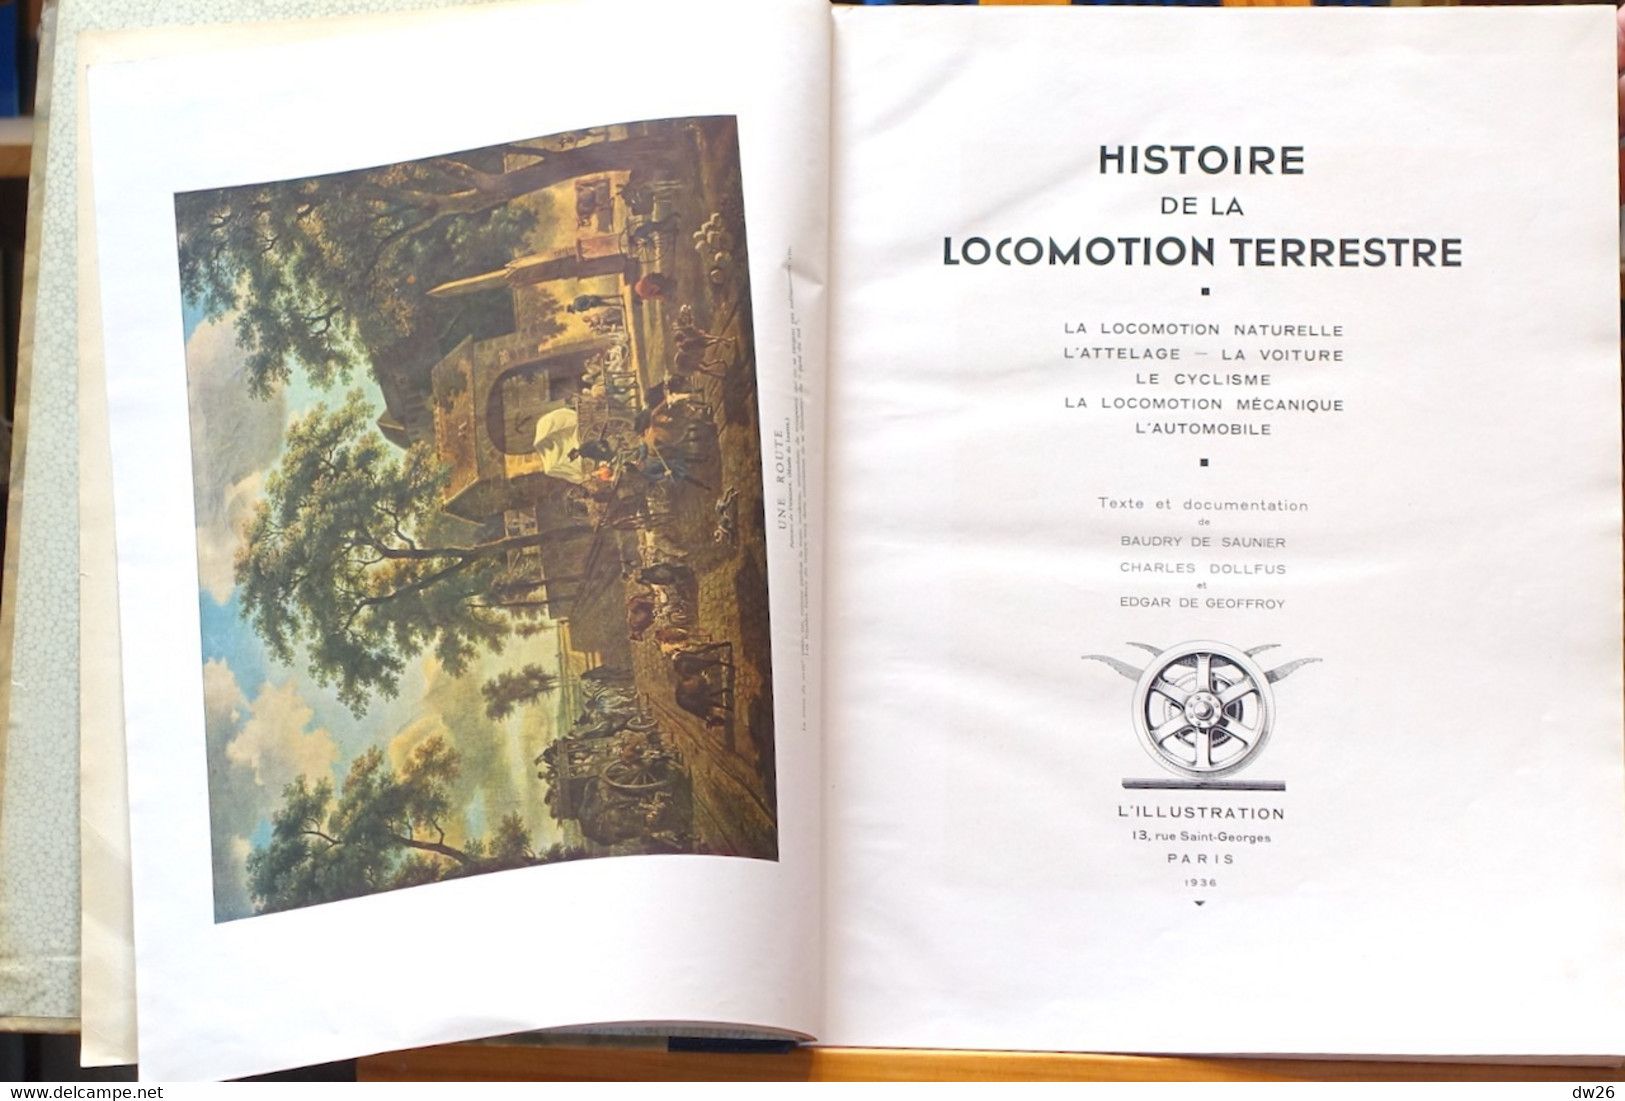 Histoire De La Locomotion Terrestre Naturelle Et Mécanique (Voiture, Cycle, Automobile) Edition L'Illustration 1935 - Histoire